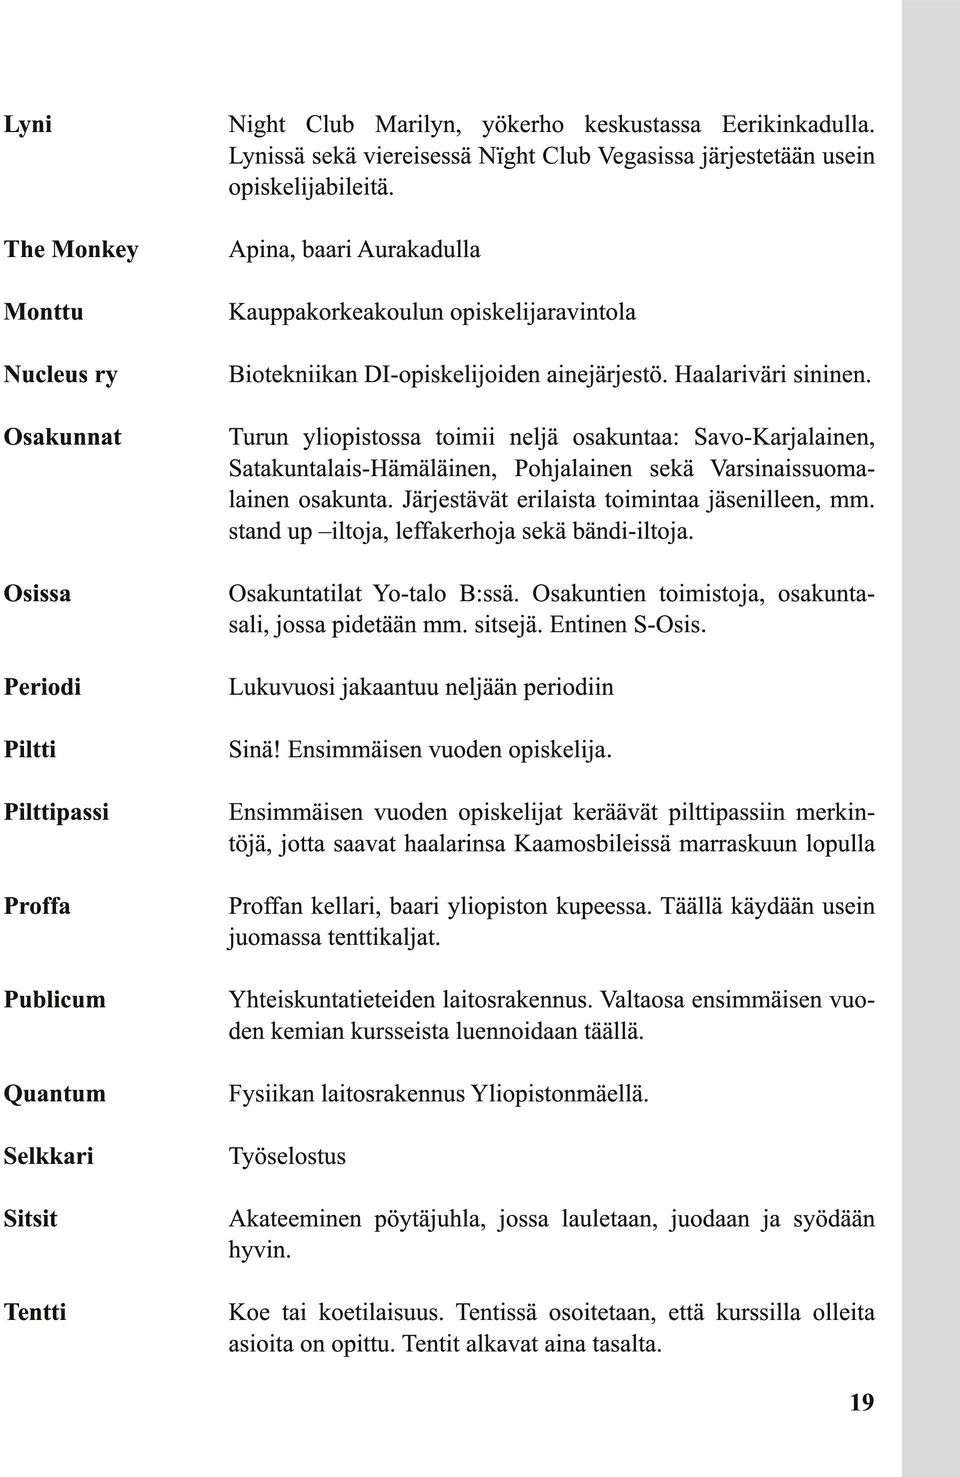 Osakunnat Turun yliopistossa toimii neljä osakuntaa: Savo-Karjalainen, Satakuntalais-Hämäläinen, Pohjalainen sekä Varsinaissuomalainen osakunta. Järjestävät erilaista toimintaa jäsenilleen, mm.